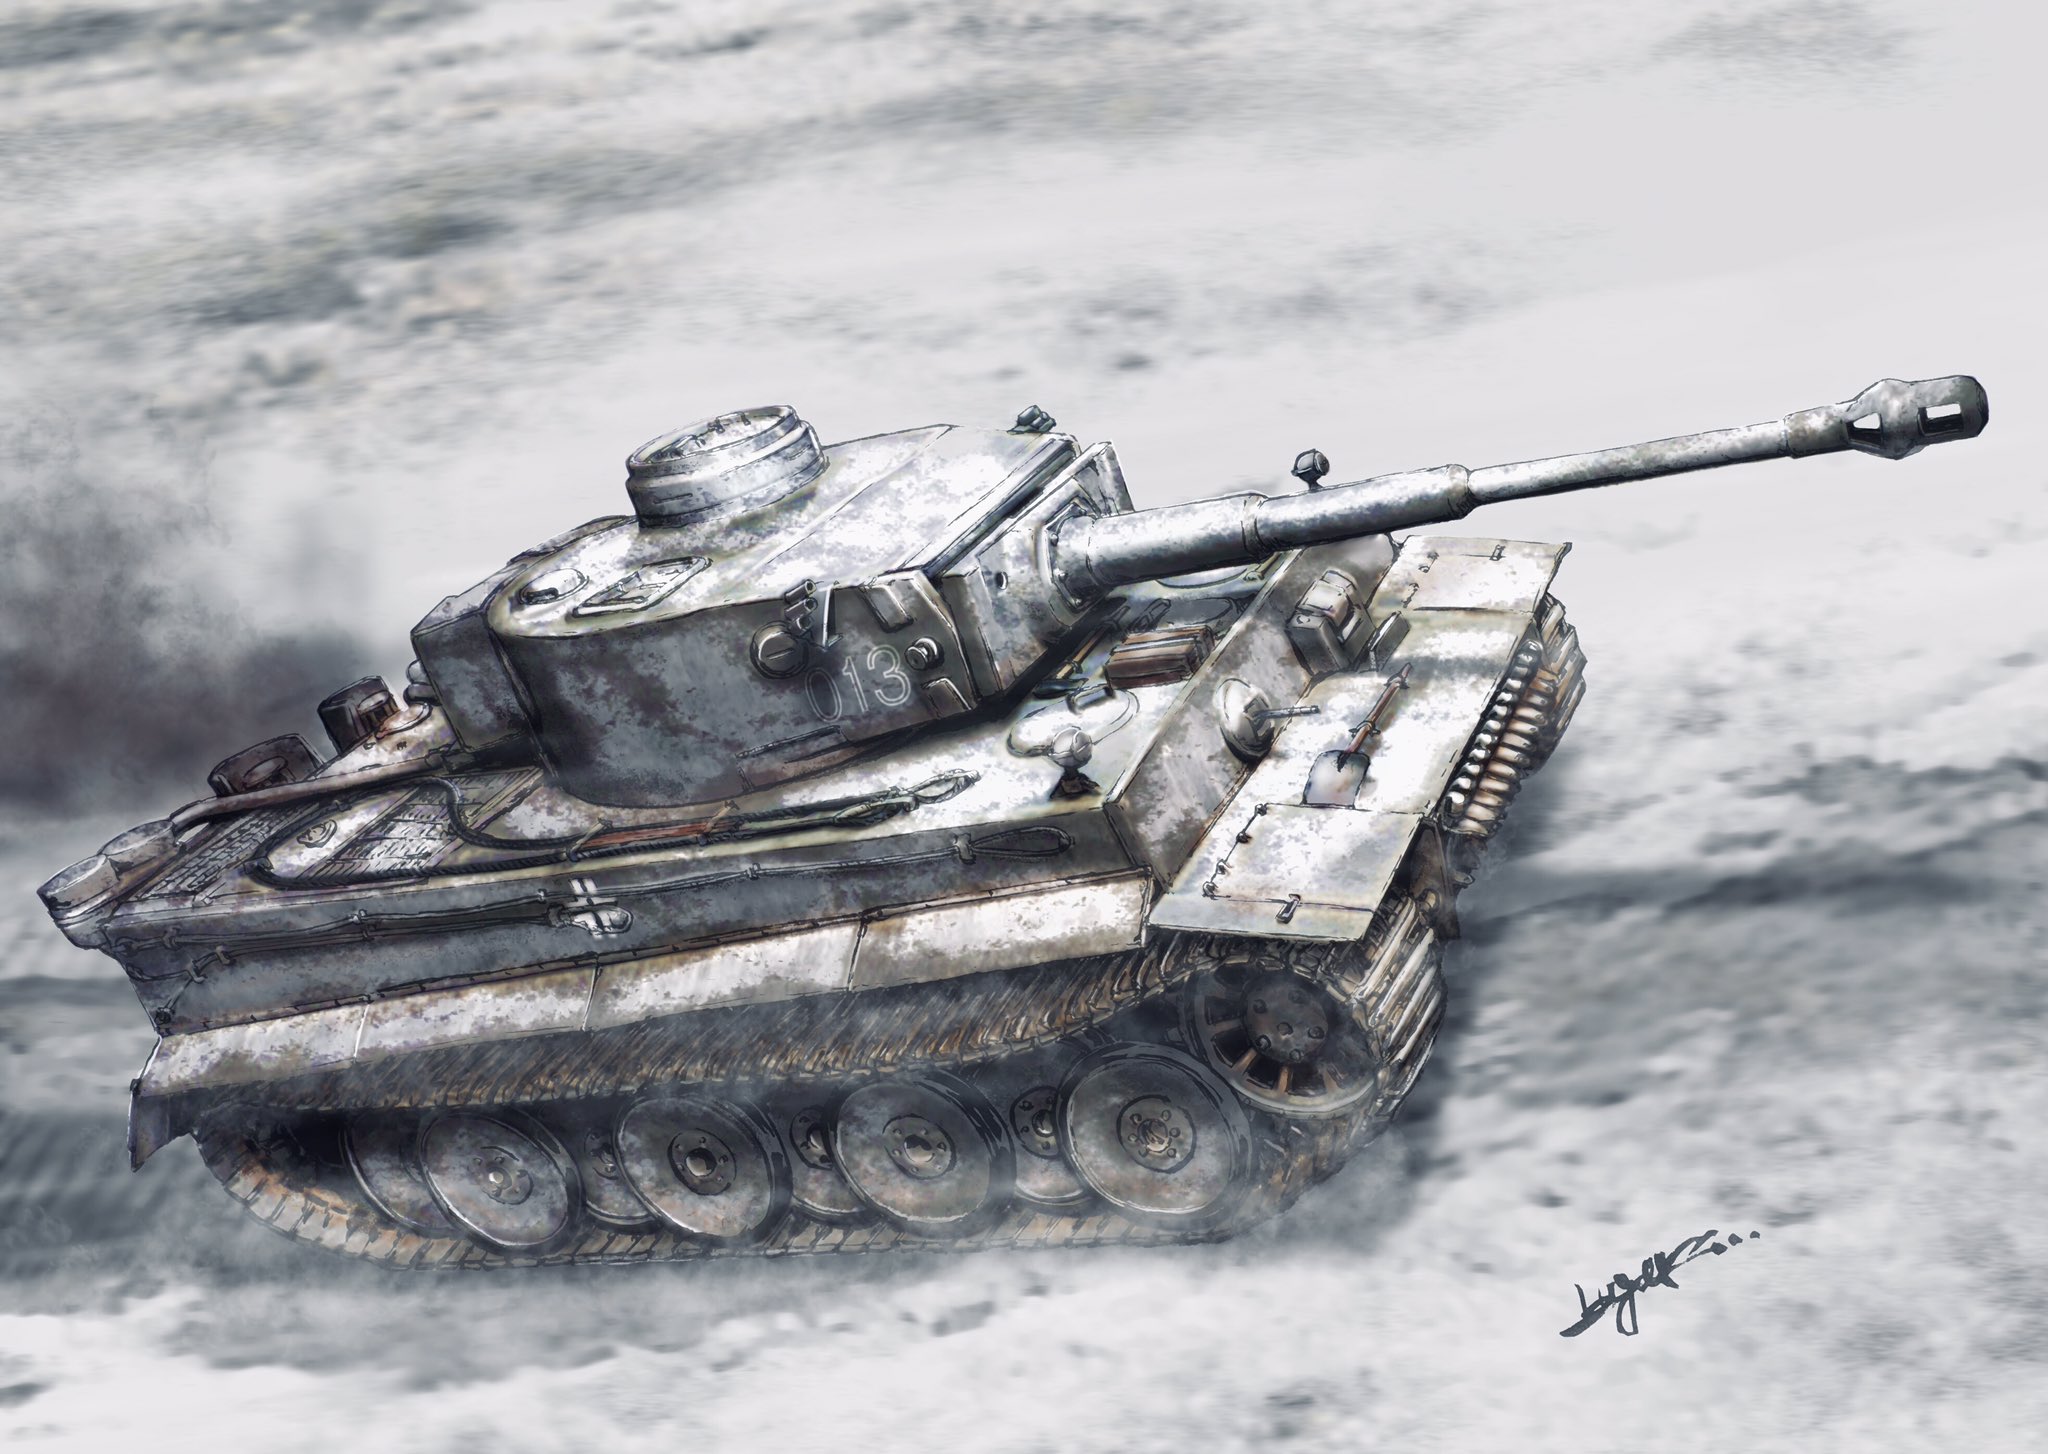 鬼ルガs Panzerkampfwagen Vi Tiger 1 白虎の進行 寒くなってきたので冬っぽい色に塗ってみました 初めての雪の迷彩 なかなか渋いんじゃないかな 戦車 Tiger1 イラスト かっこいいと思ったらrt T Co Q6elo85oym